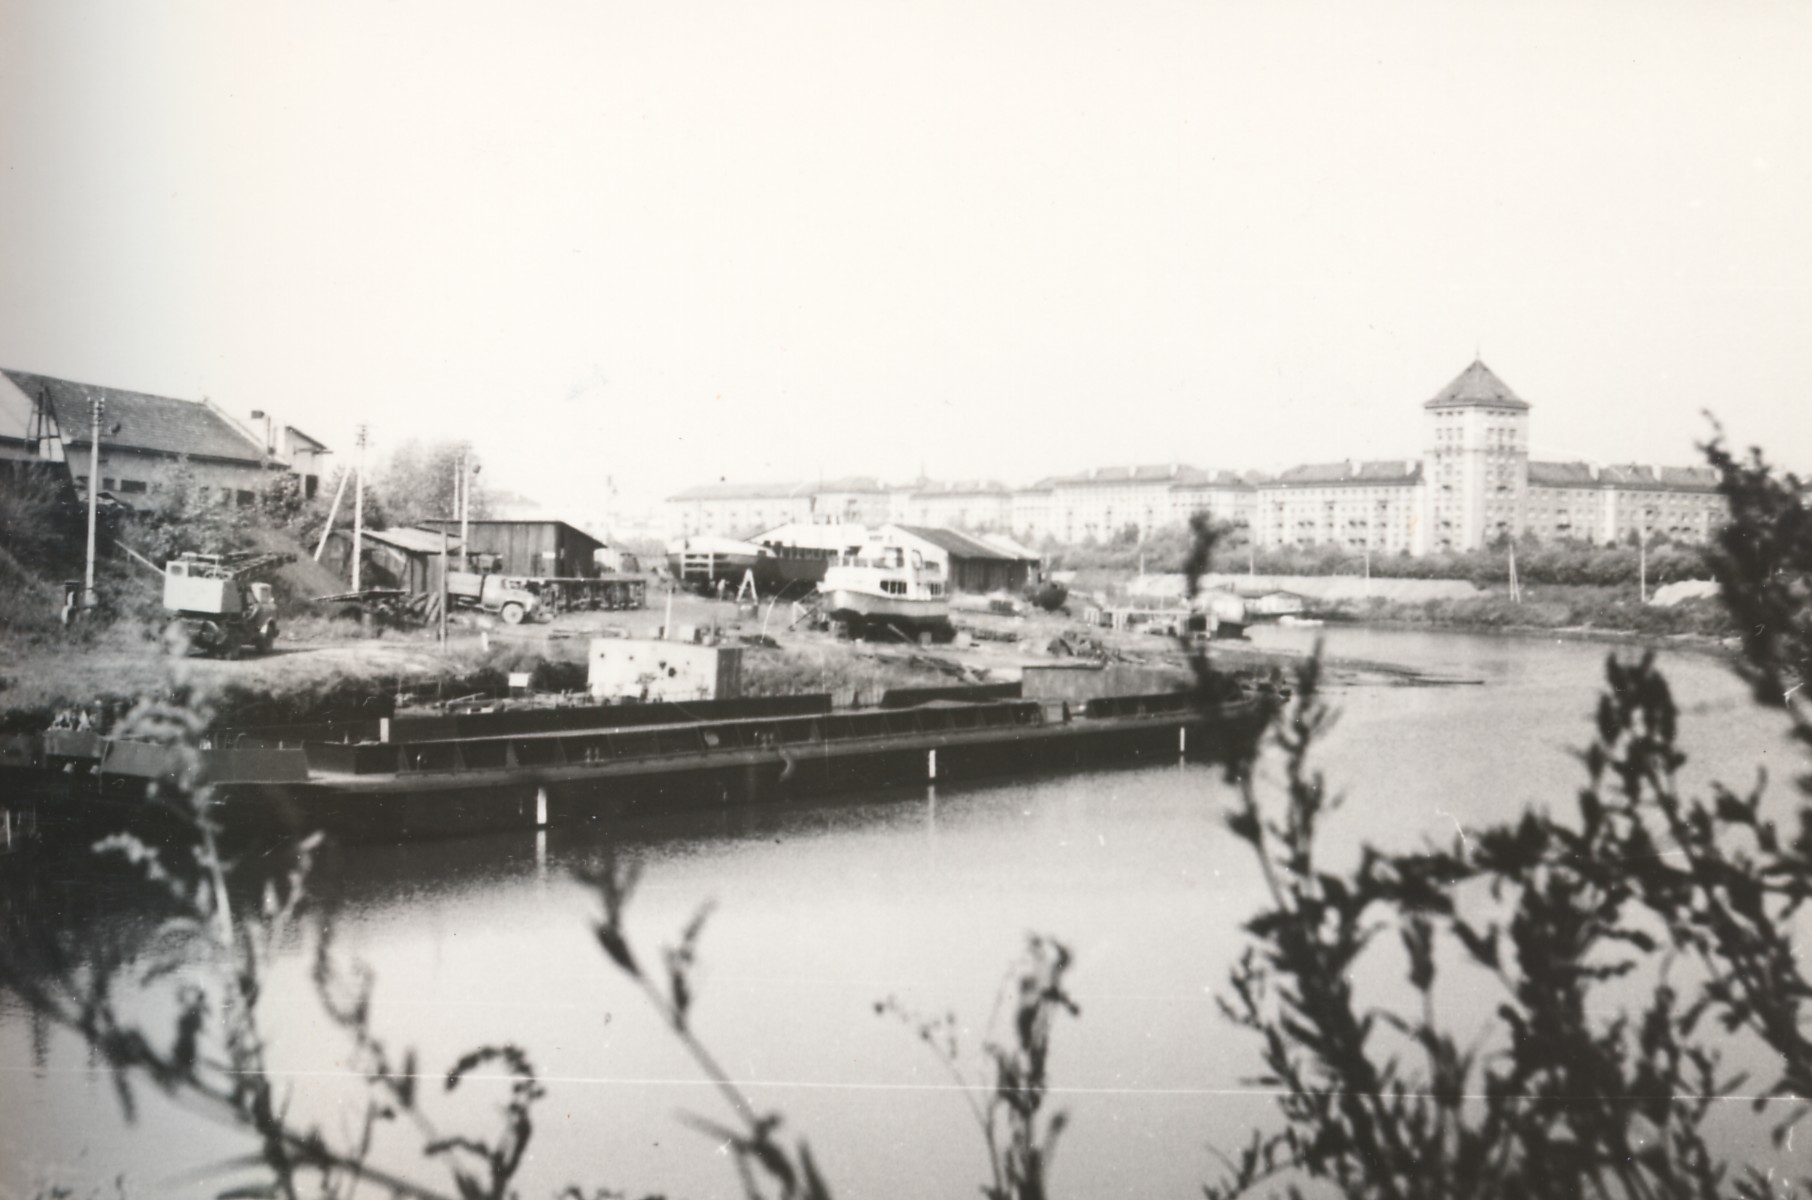 Buvusi prieplauka (Žiemos uostas) ir sandėliai ties Šv. Kryžiaus (karmelitų) bažnyčia. Apie 1968 m. Fotogr. Pranas Juozapavičius [Iš KAVB fondų]